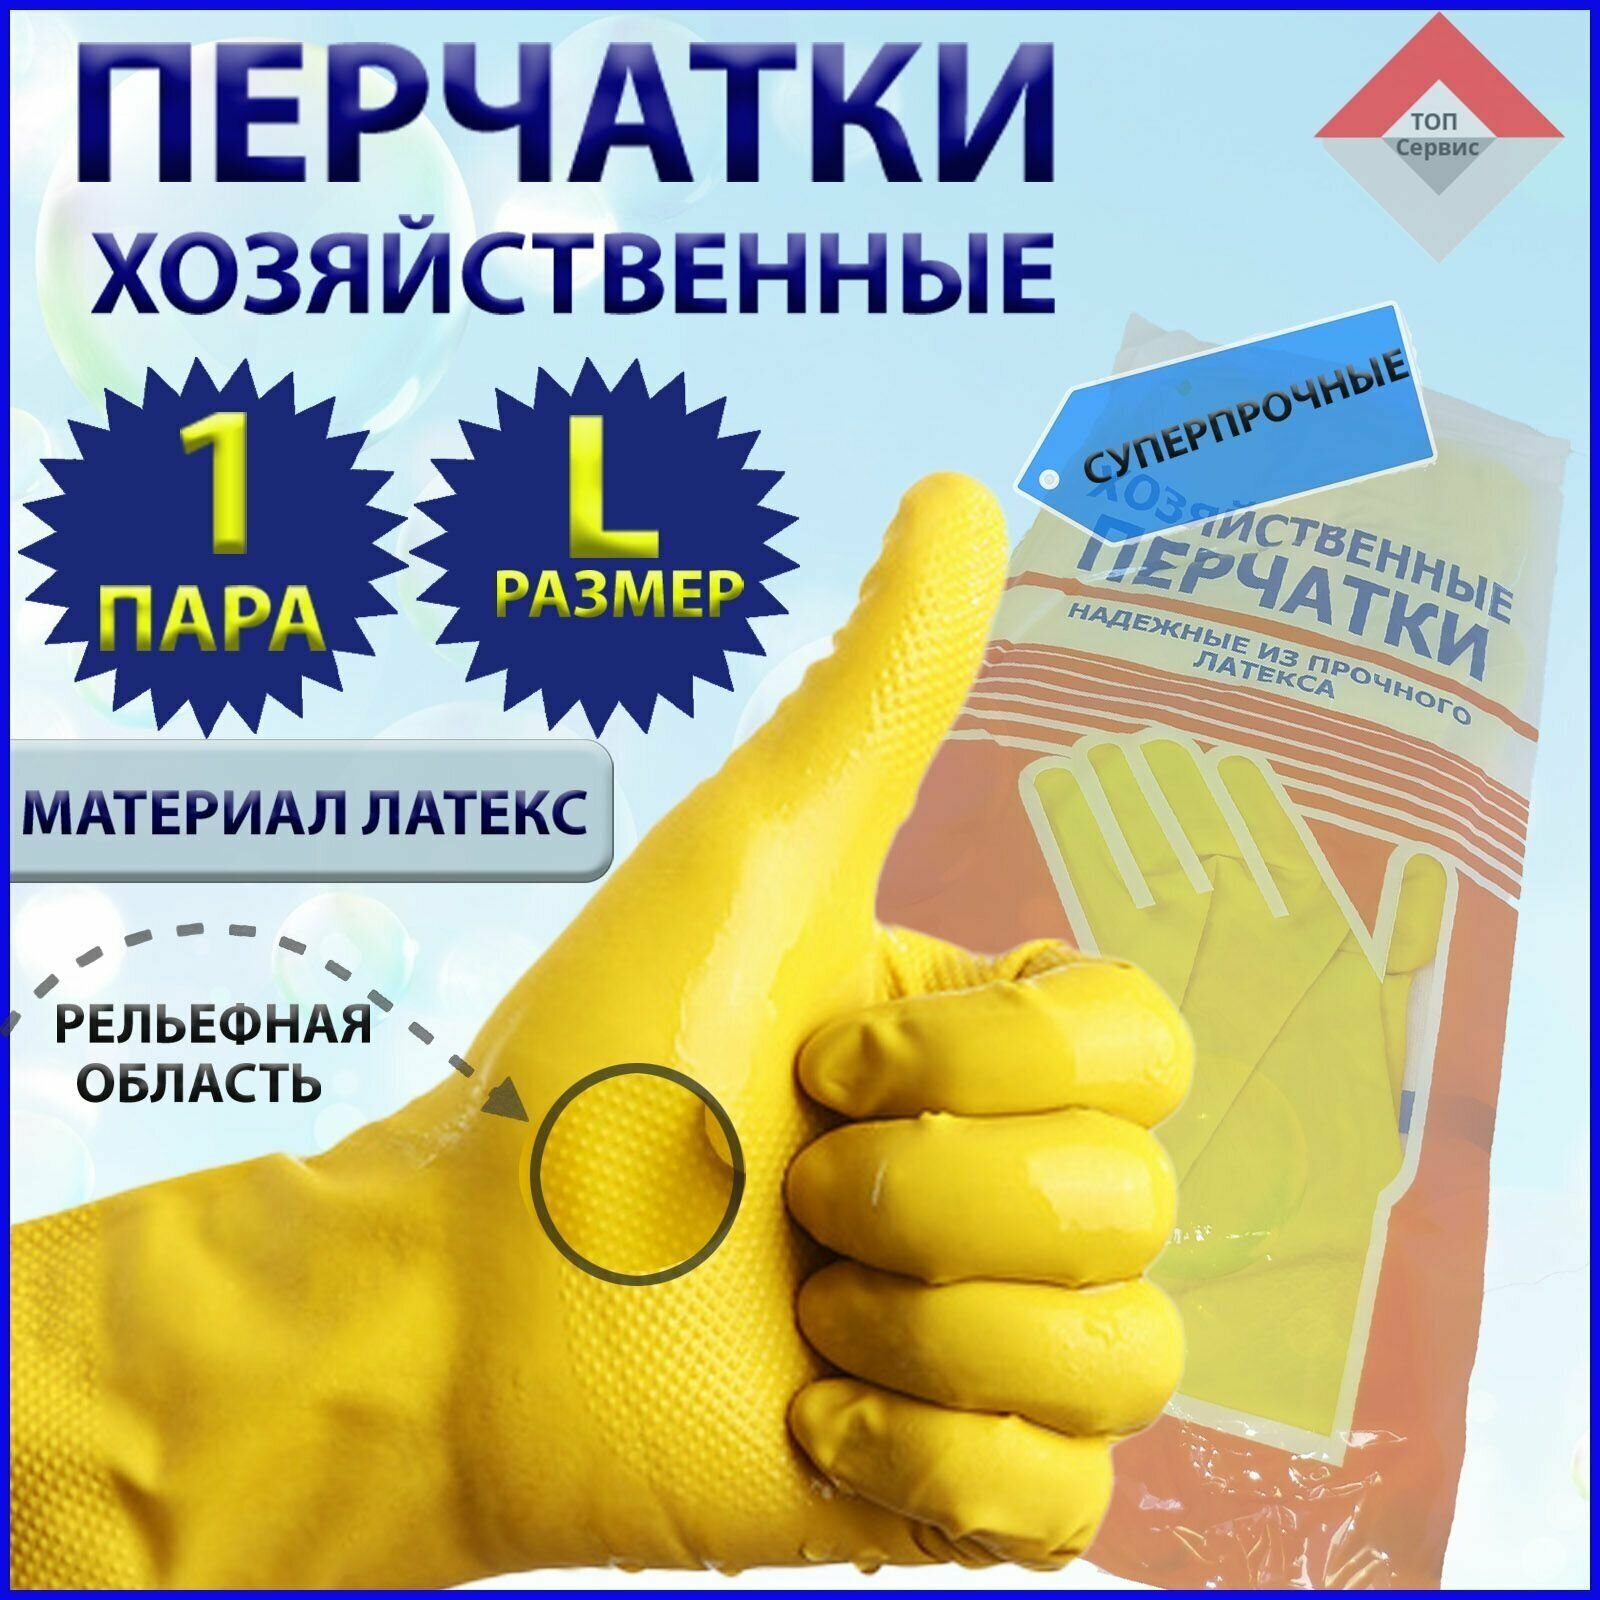 Перчатки хозяйственные. Размер L - 1 пара. Желтые. Перчатки латексные. Резиновые перчатки.